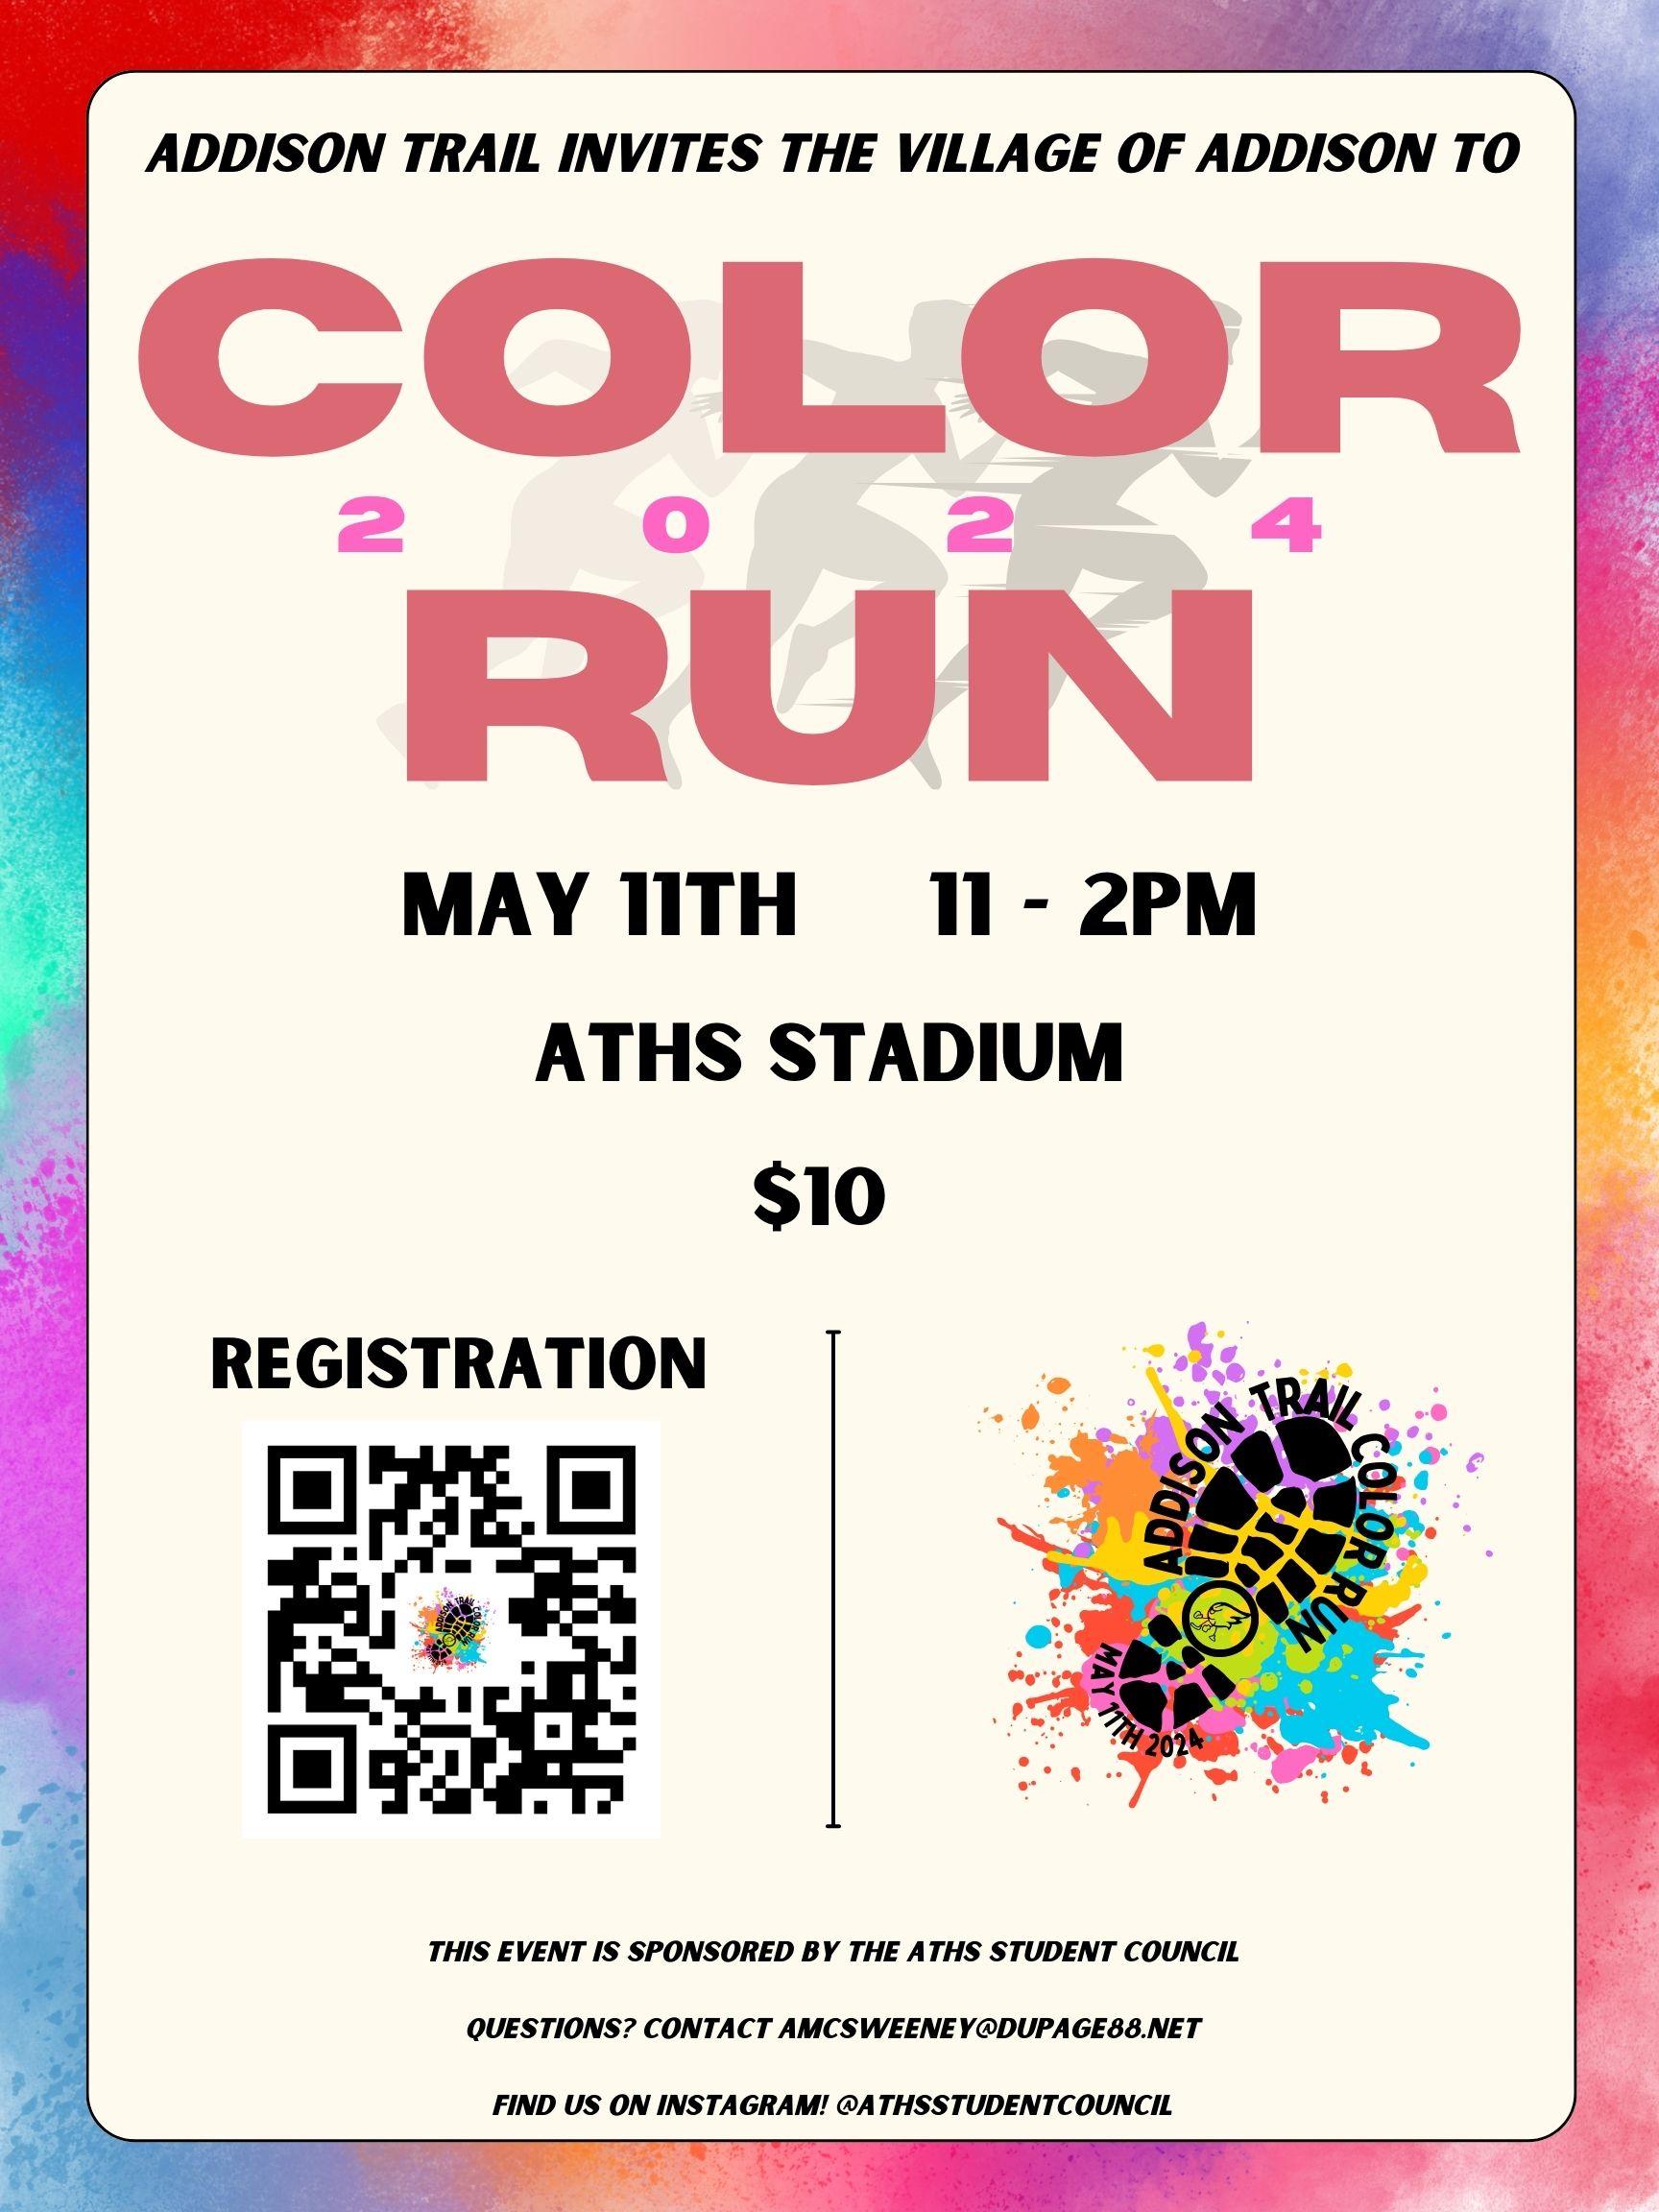 Addison Trail Student Council invites community to participate in Color Run fundraiser 